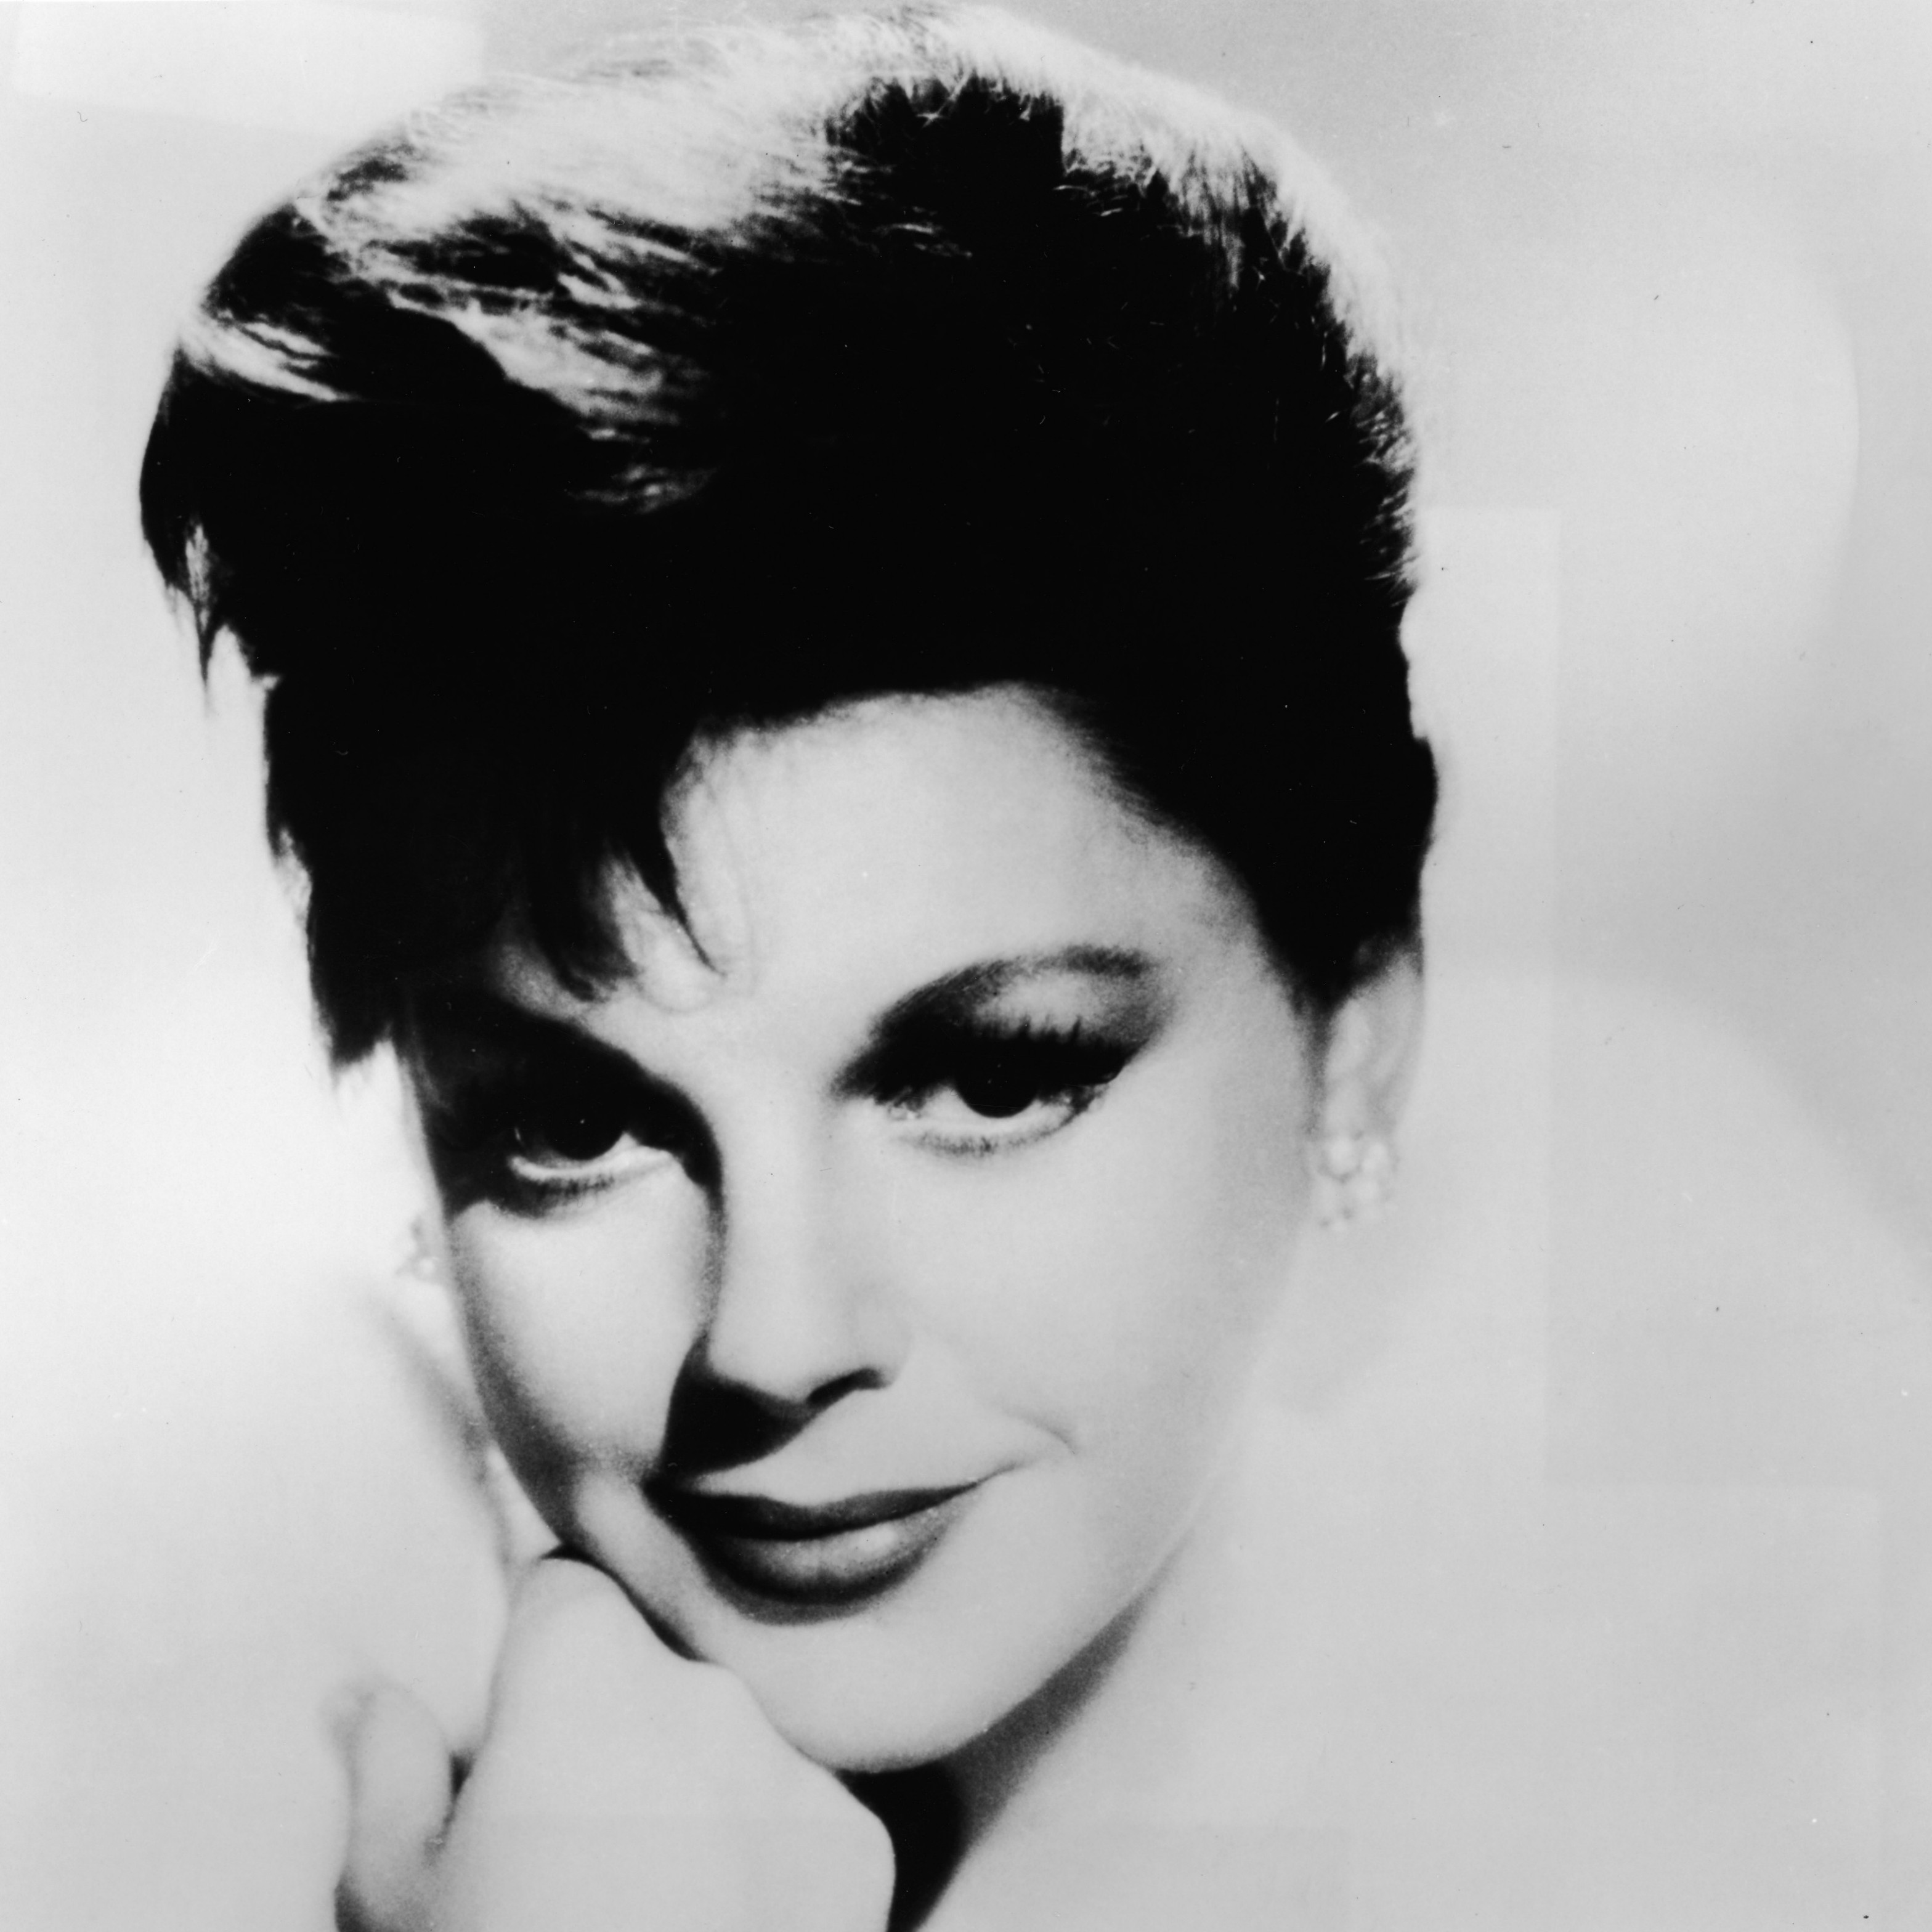 Judy Garland, atriz e cantora consagrada, faleceu por causa de uma overdose de barbitúricos. Ela partiu em 22 de junho de 1969, aos 47 anos. (Foto: Getty Images)